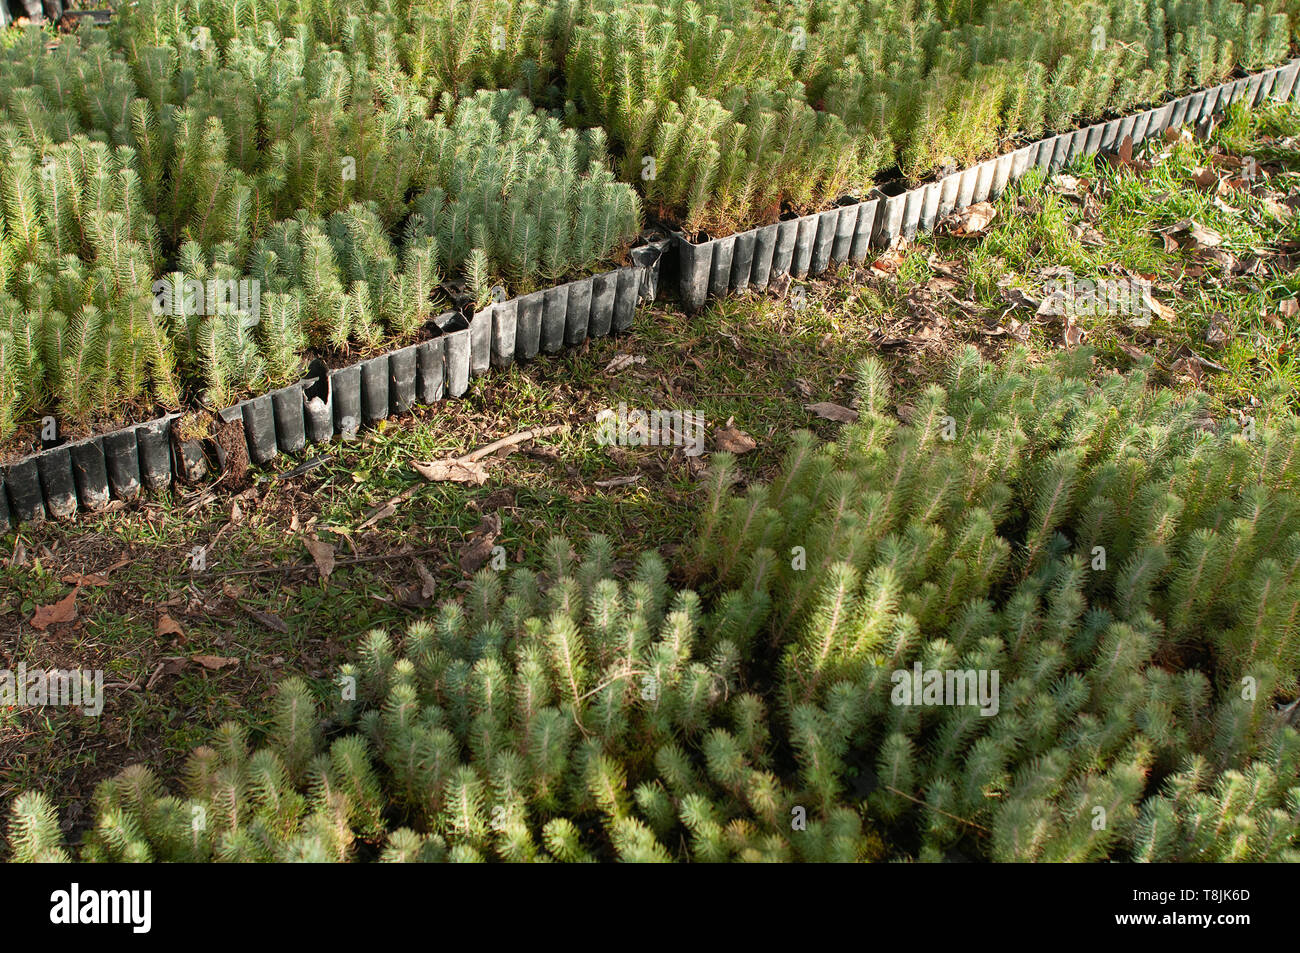 Pine tree nursery for reforestation - Pinus pinea Stock Photo